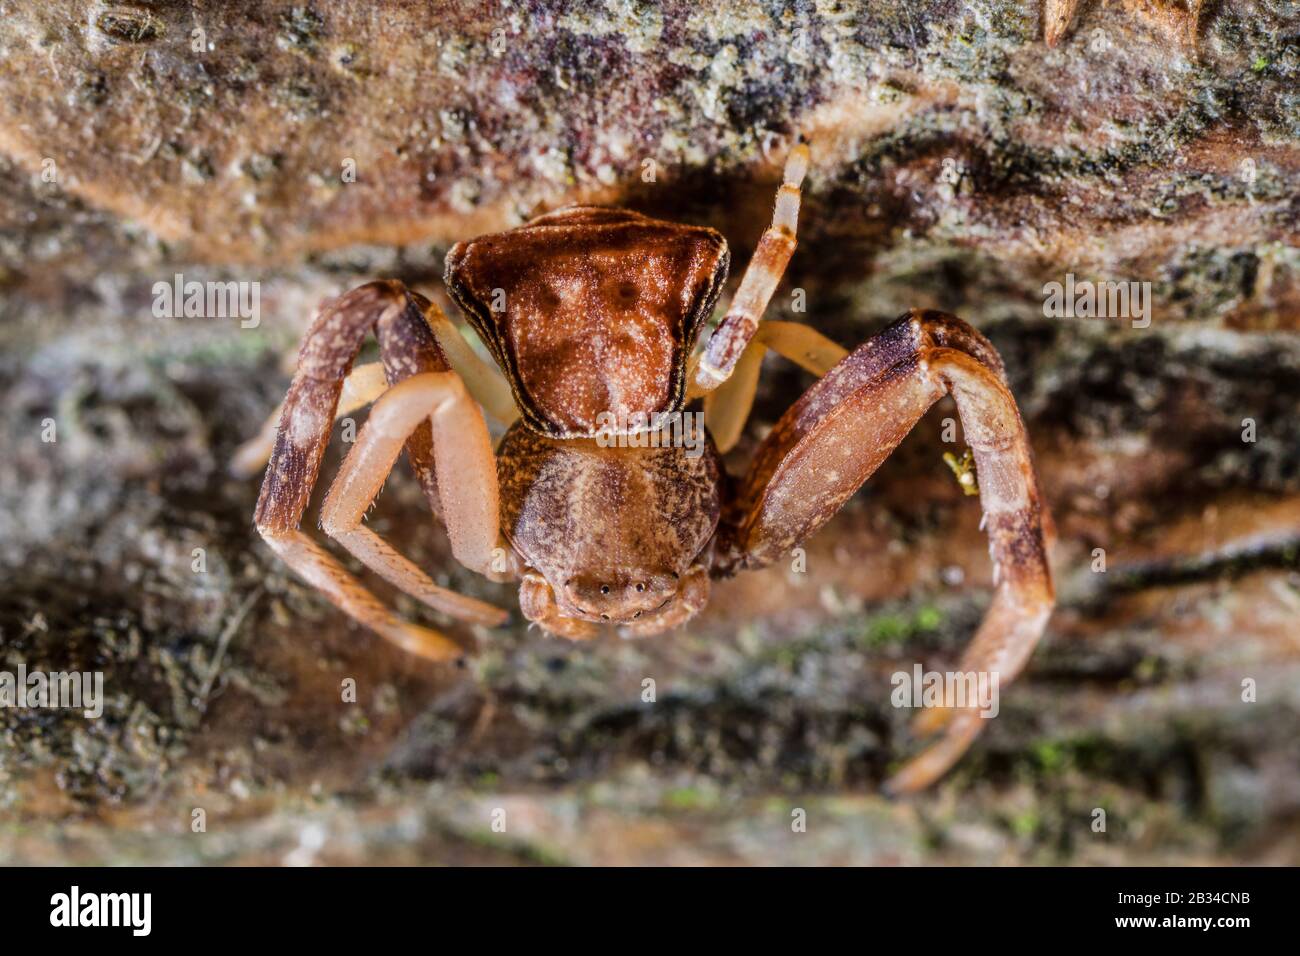 Crab Spider (Pistius truncatus), top view, Germany Stock Photo